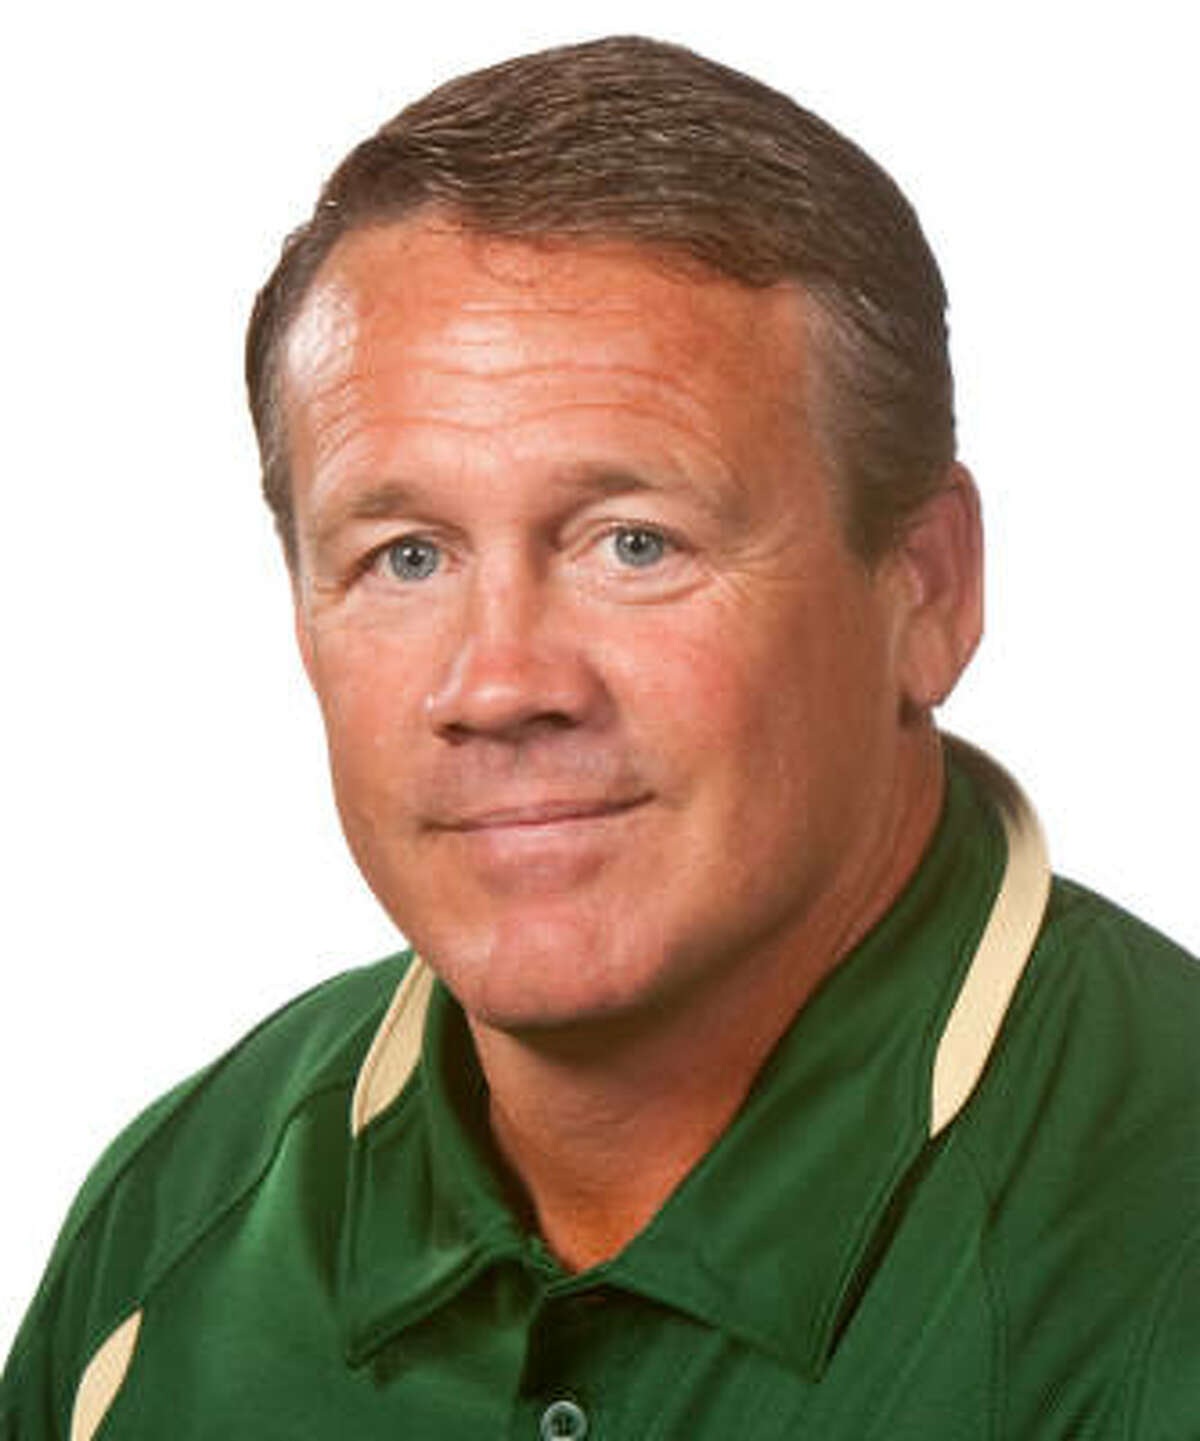 Mark Snyder, Texas A&M defensive coordinator